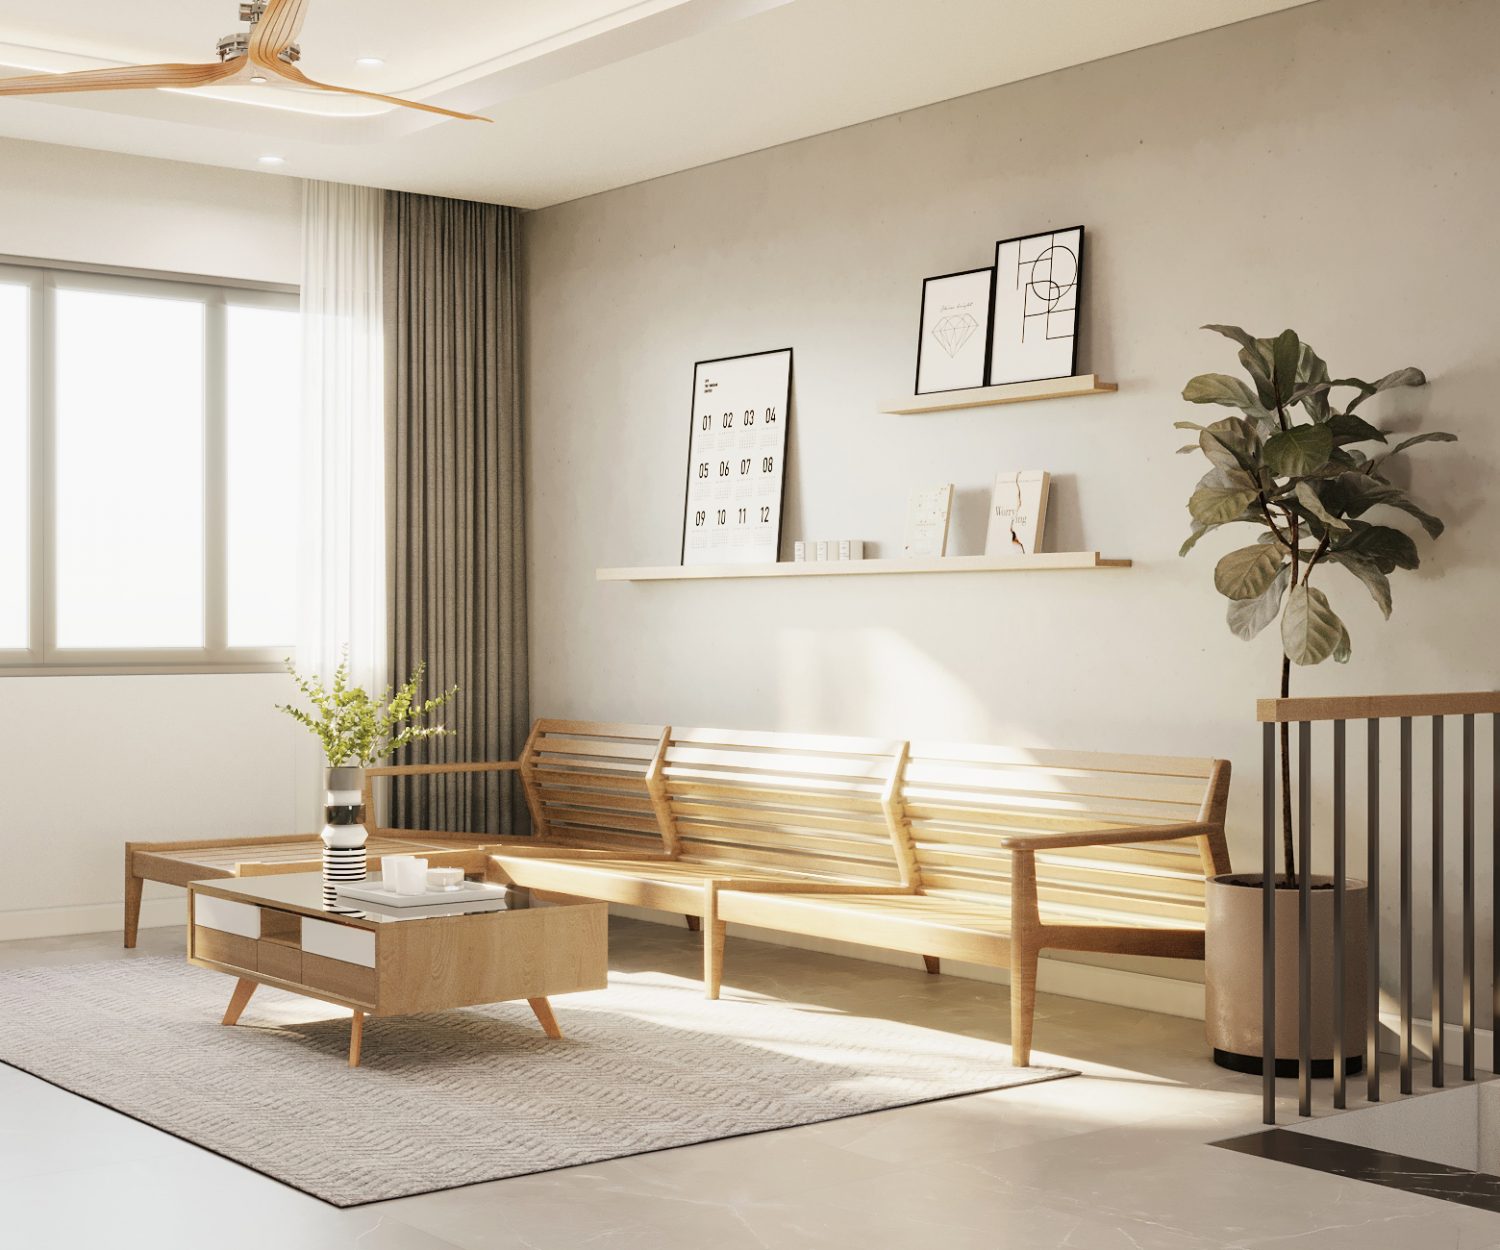 Thiết kế nội thất nhà phổ Hà Nội theo lối sống tối giản